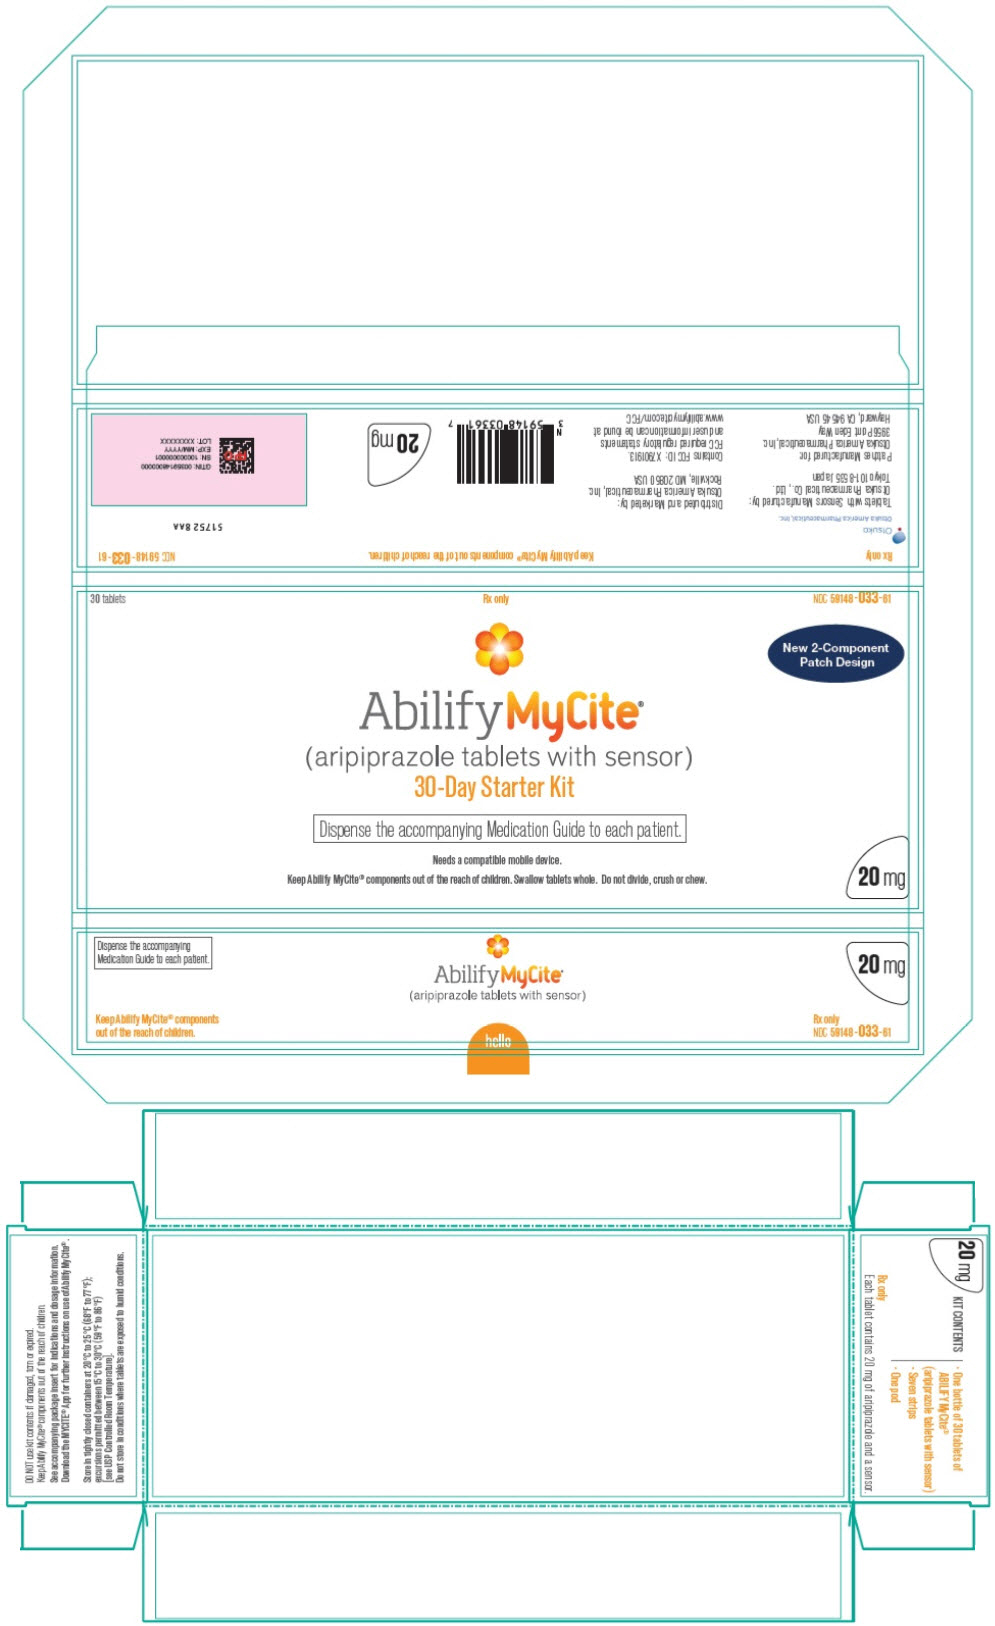 PRINCIPAL DISPLAY PANEL - Starter Kit Carton - 20 mg